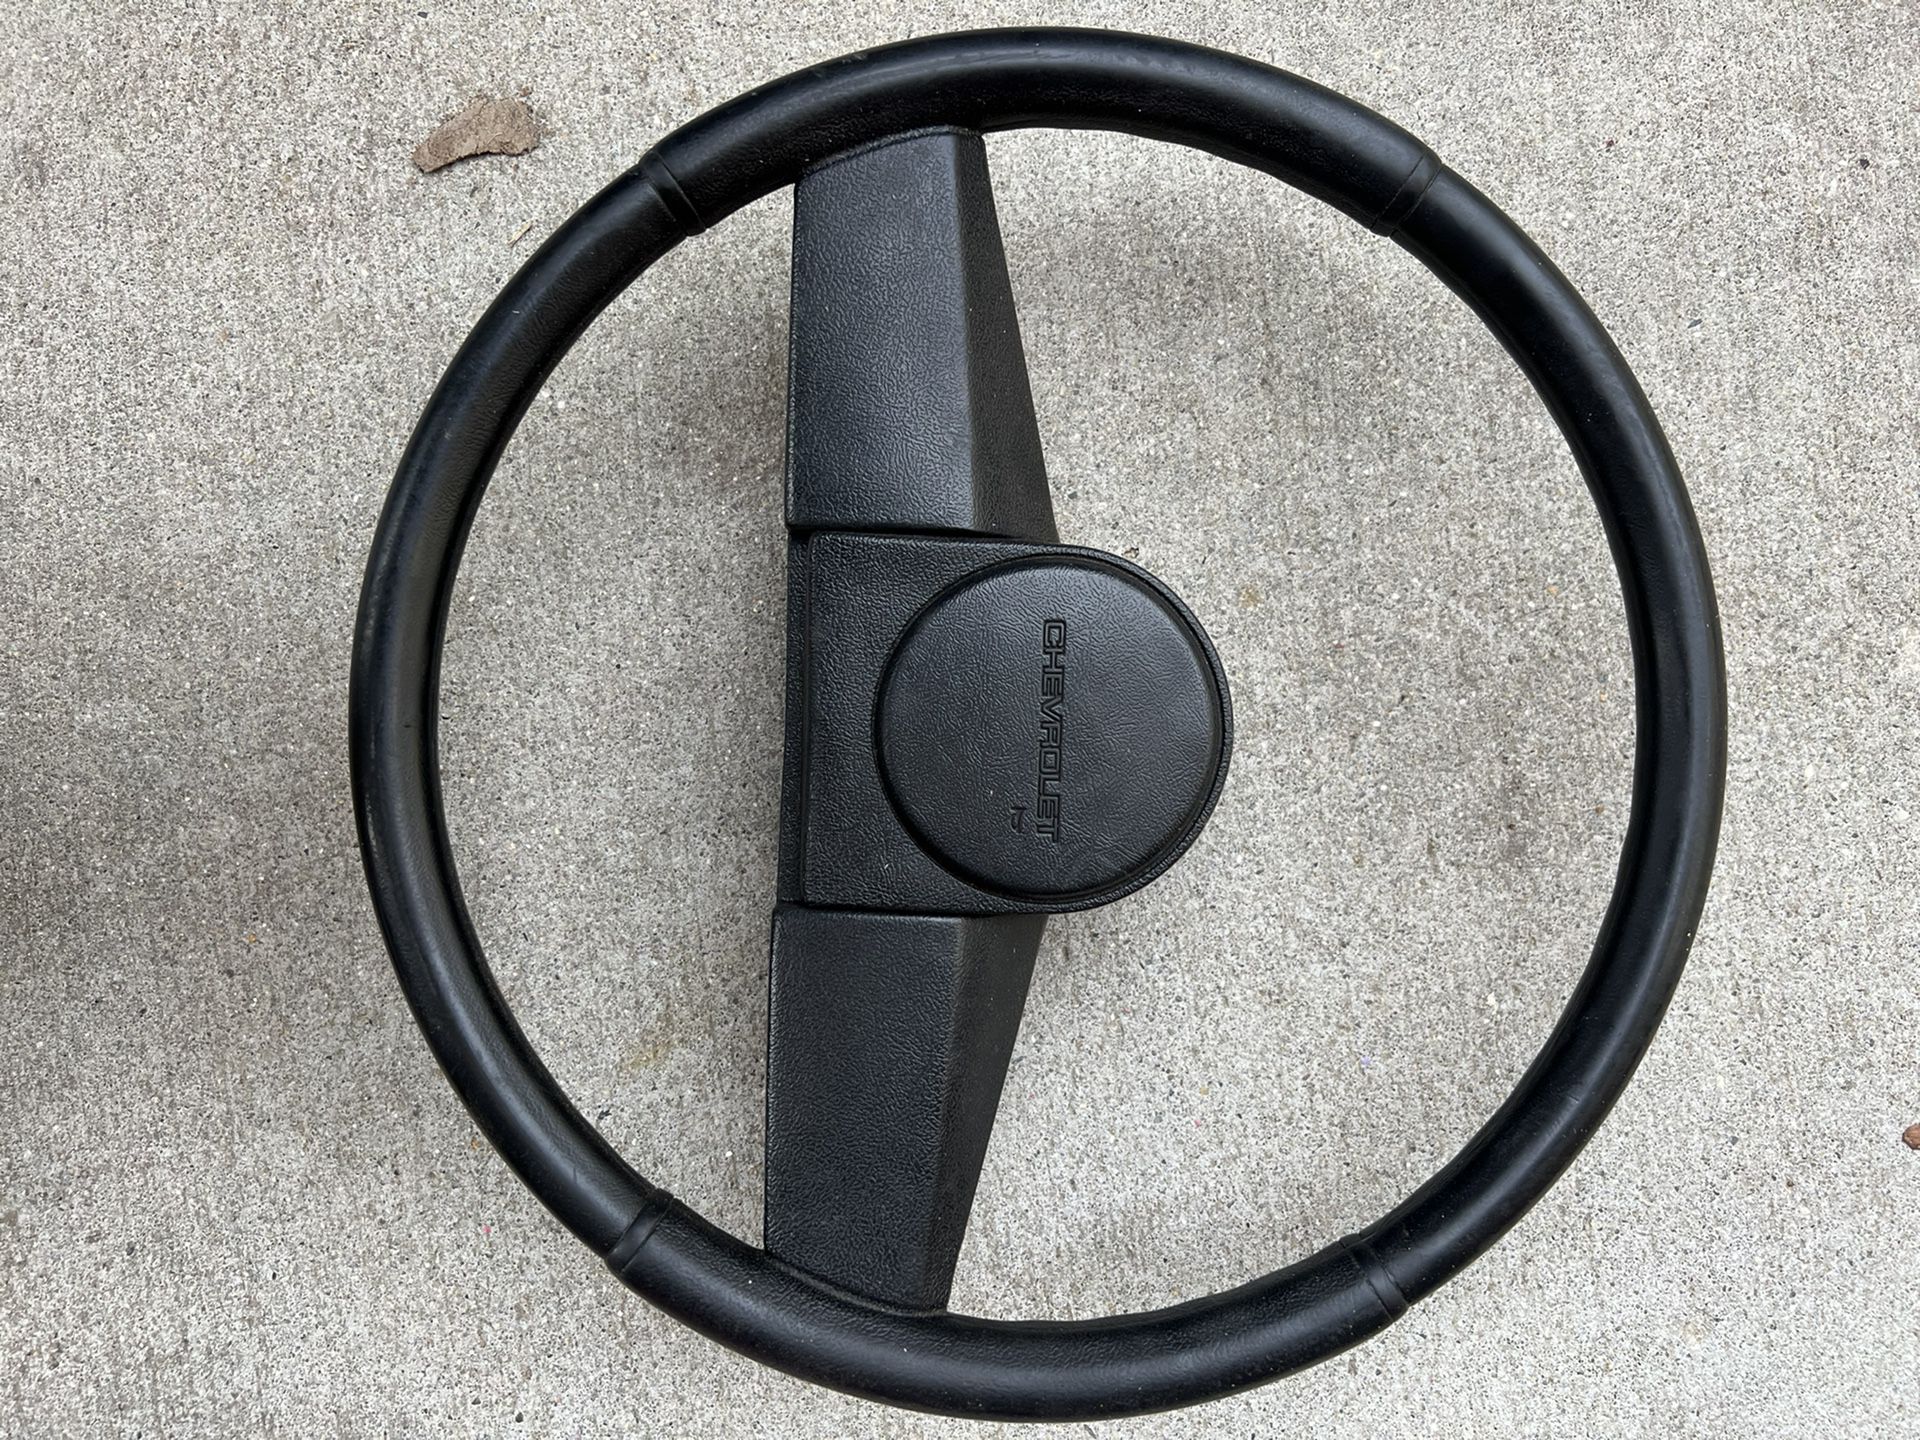 1991 S-10 Steering Wheel